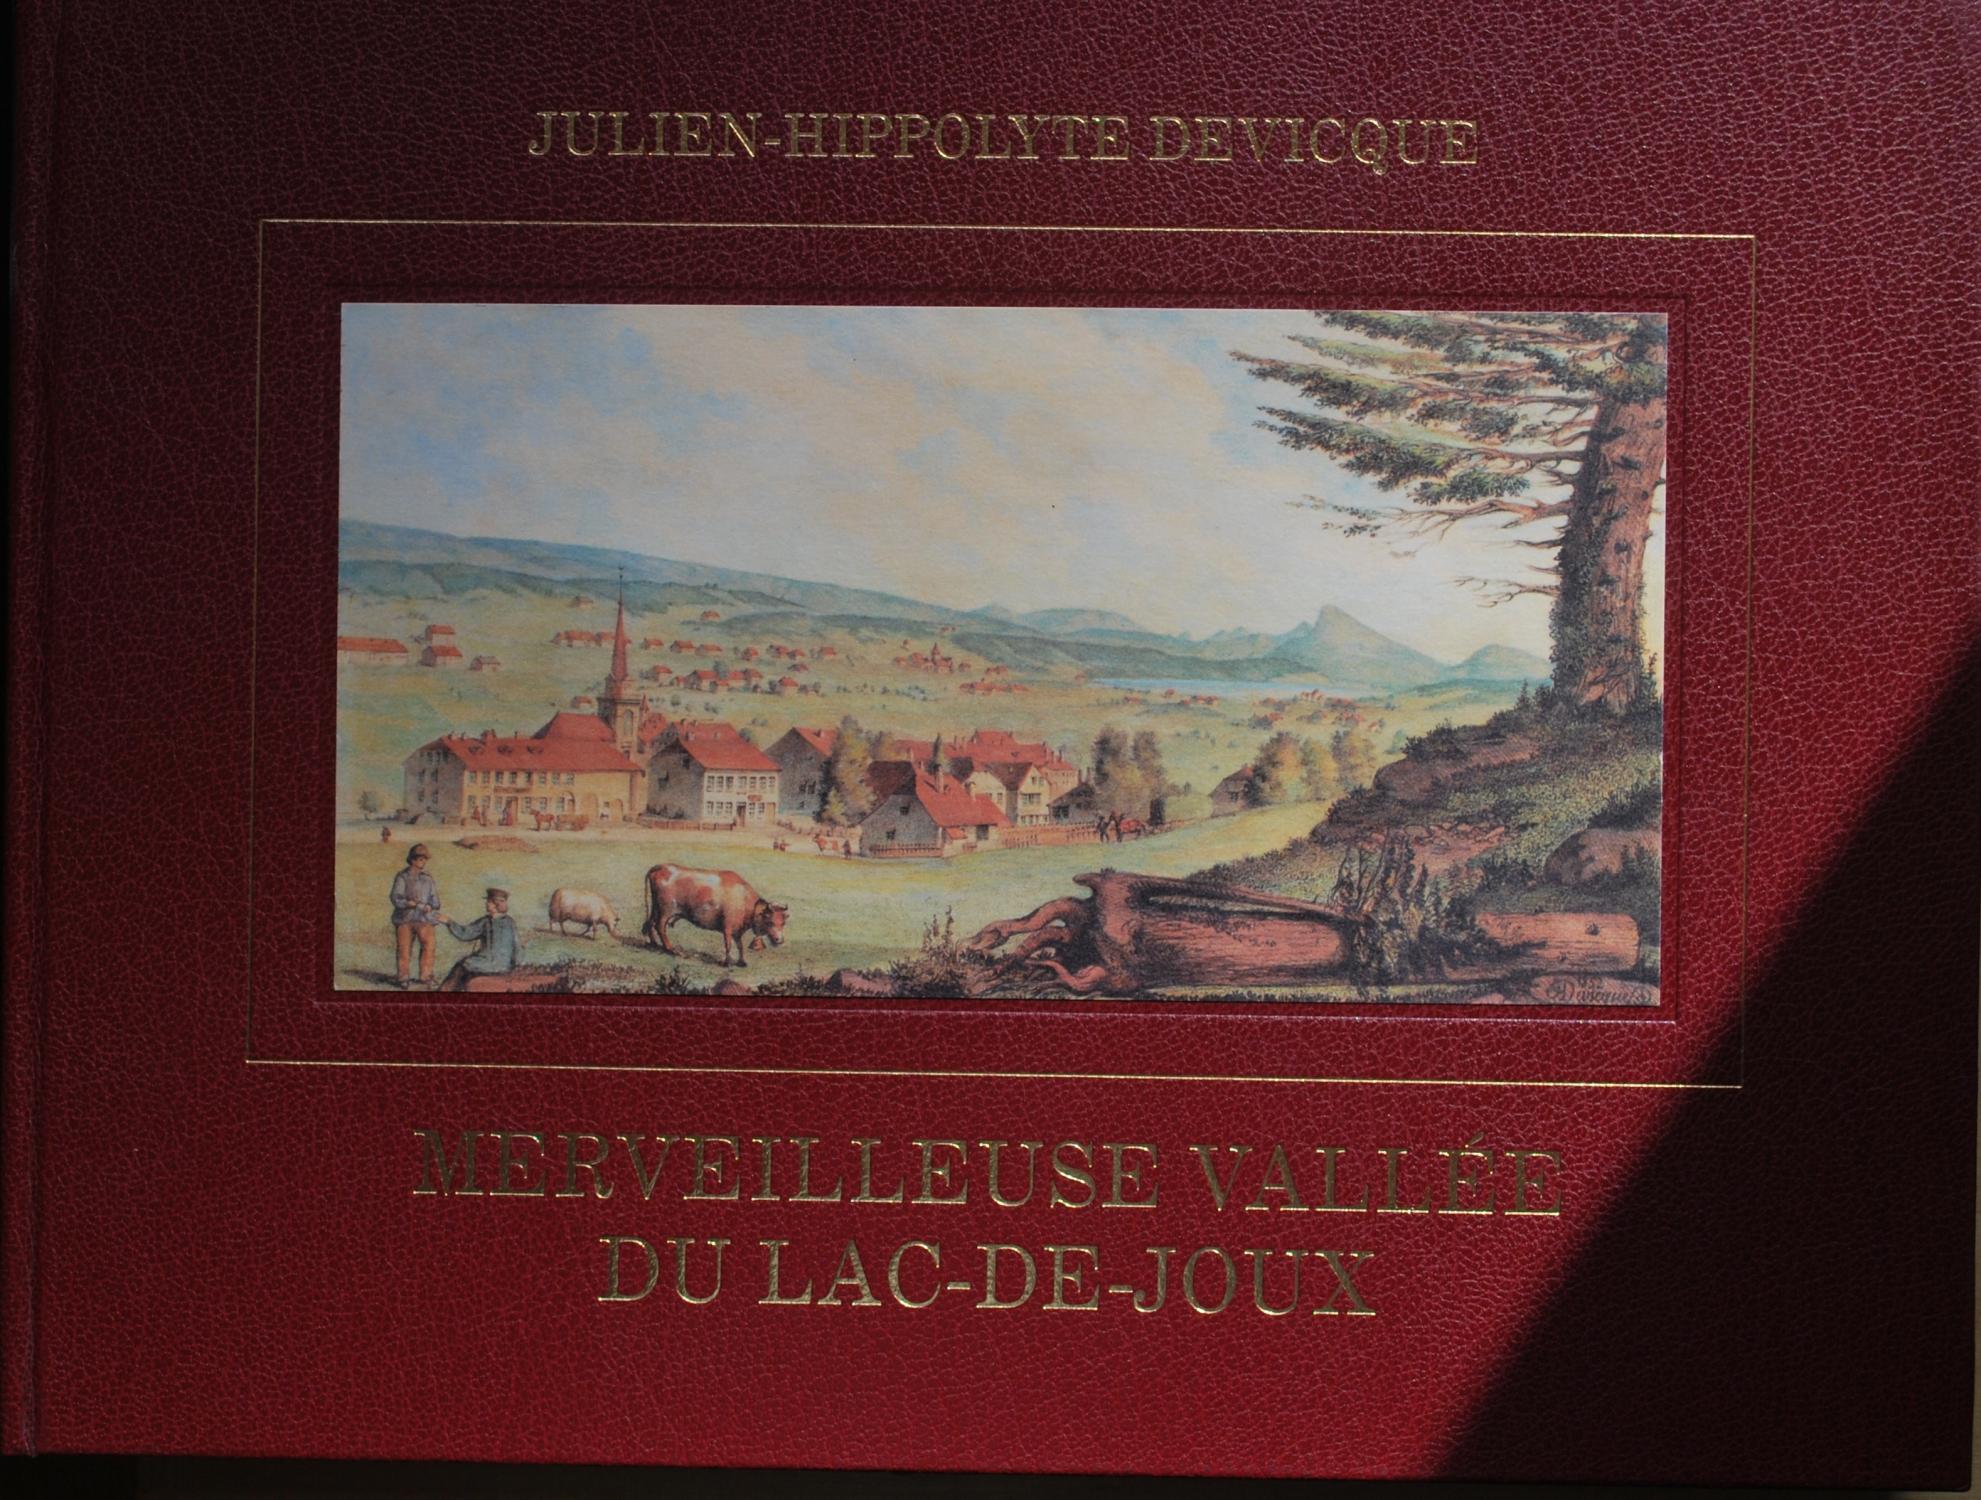 Merveilleuse Vallée du Lac-de-Joux - Julien-Hippolyte Devicque - Éditions le Pélerin, 1992